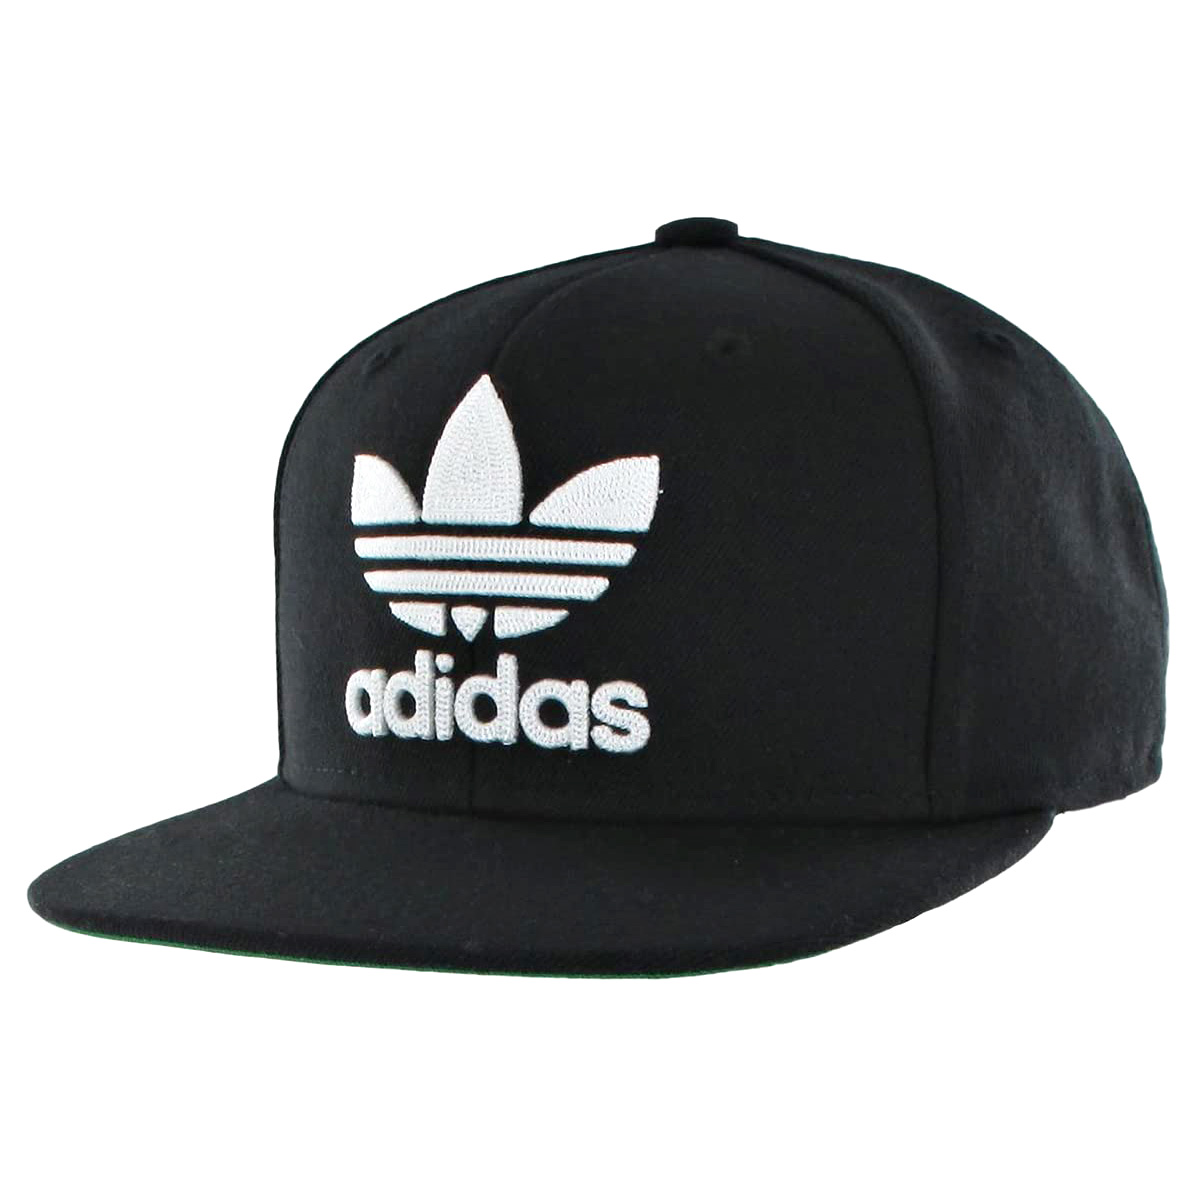 楽天市場 アディダス Adidas S Originals Trefoilchain Snapback キャップ メンズ 男性用 オリジナルス ロゴ トレフォイル 帽子 ブラック ホワイト おしゃれ ベースボールキャップ 速乾 ブランド Salada Bowl おしゃれブランド通販